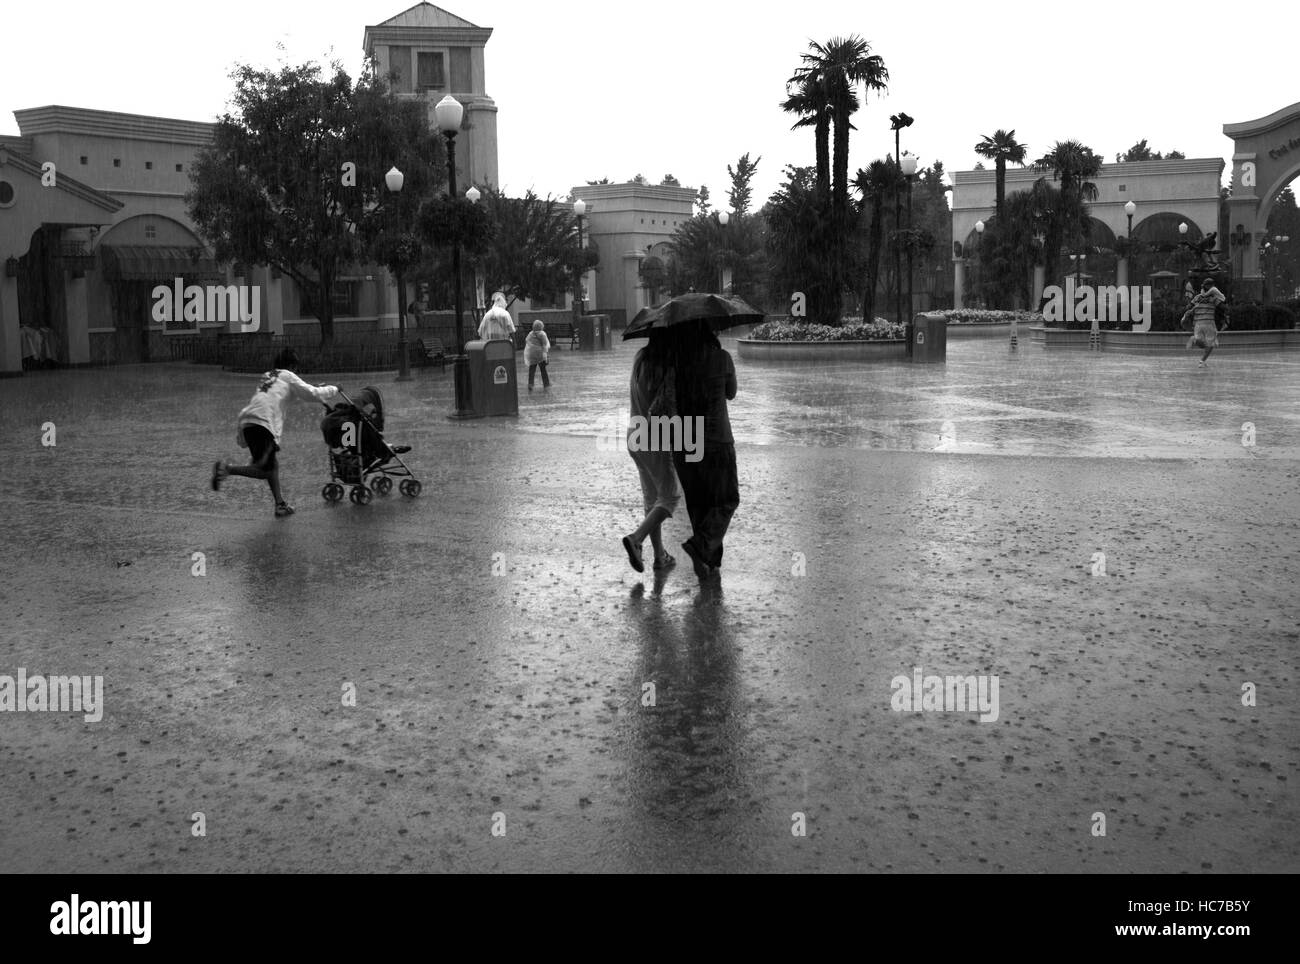 Le persone che eseguono sotto la pioggia in un parco a tema Foto Stock